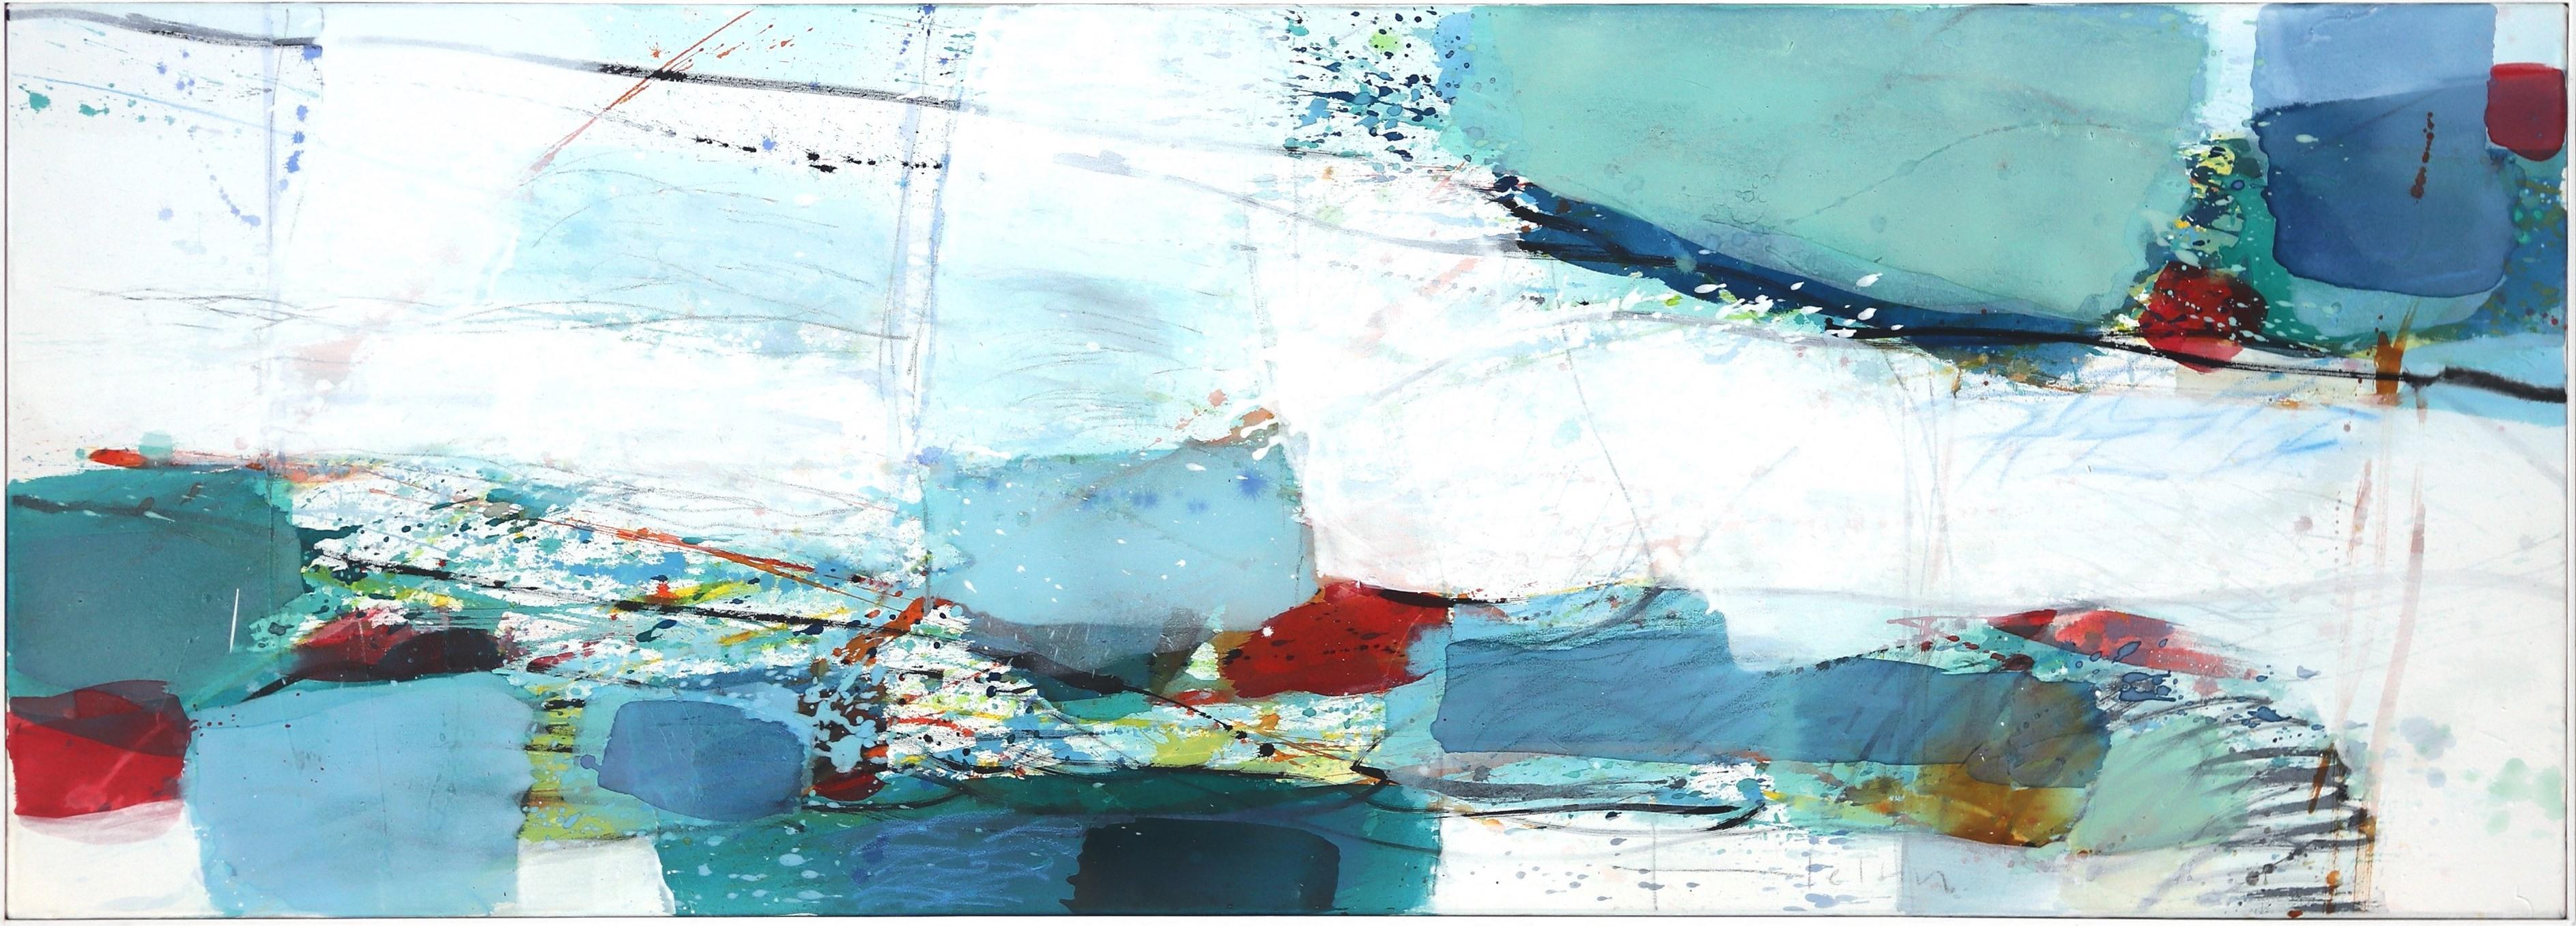 Sea Bank - Abstract Mixed Media Painting (framed)